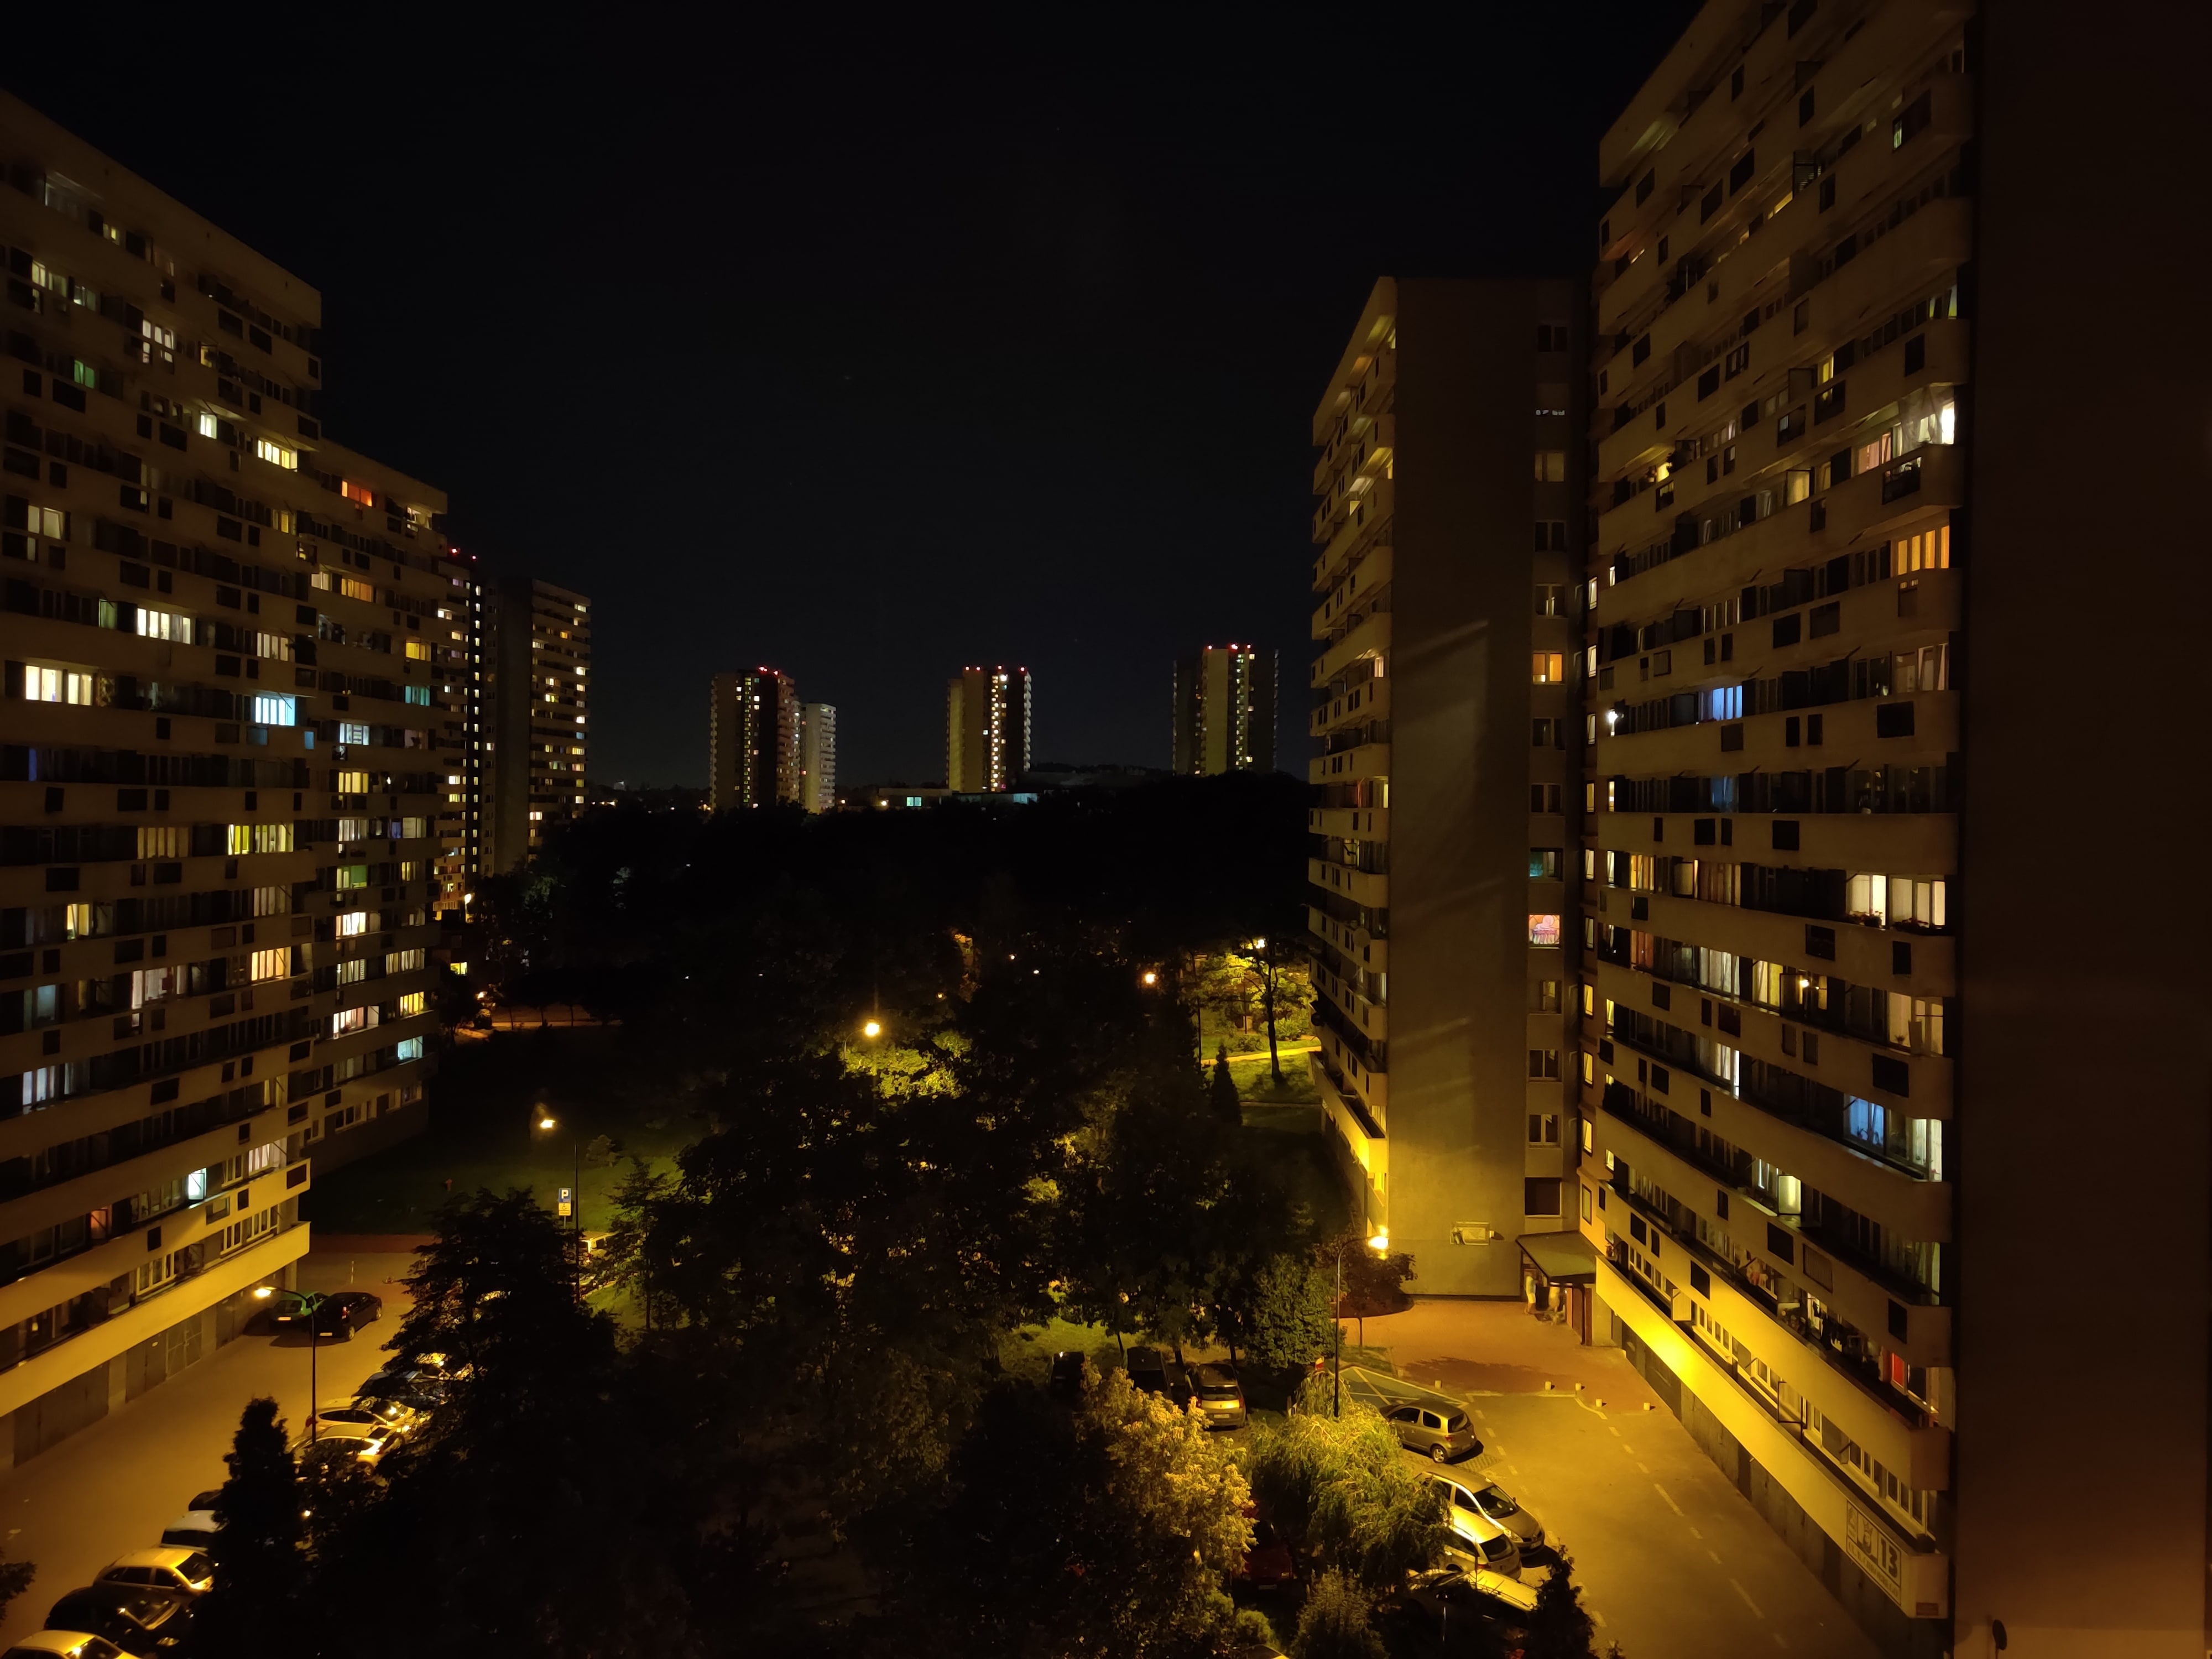 Zdjęcia nocne - OnePlus 7 Pro